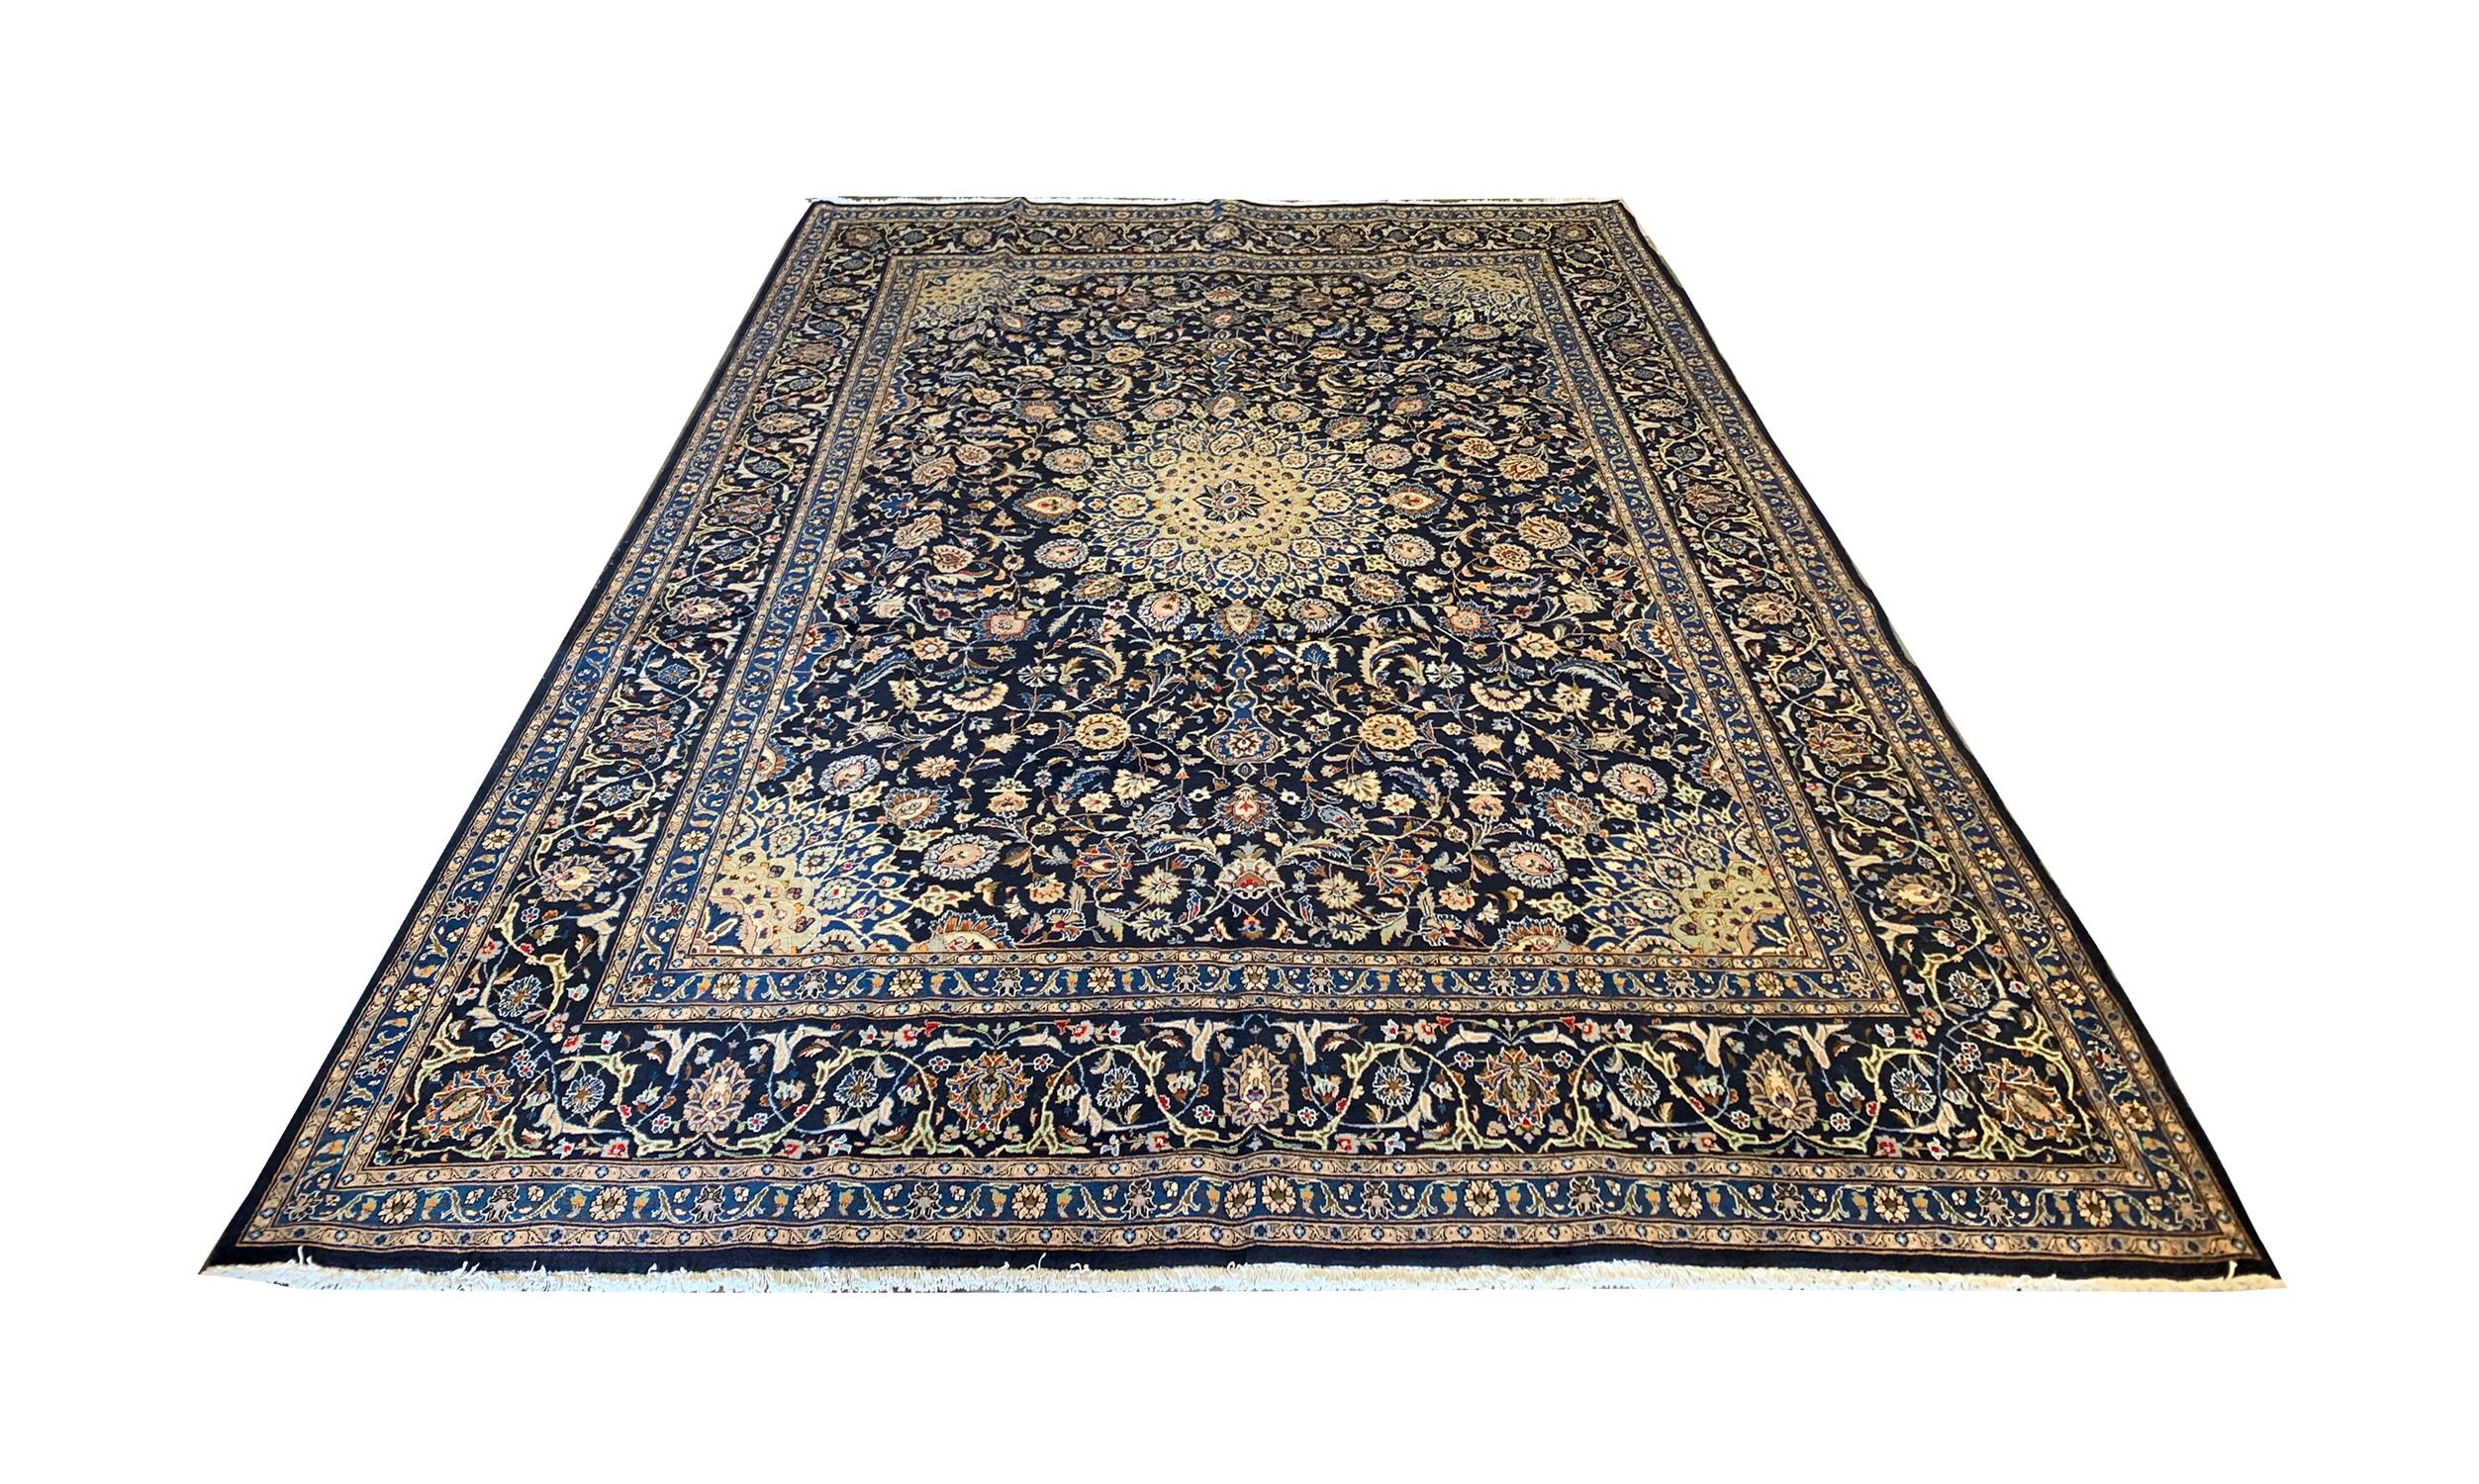 Dieser elegante handgewebte Wollteppich wurde um 1960 in Aserbaidschan gewebt. Das zentrale Muster zeigt ein prächtiges Medaillon auf einem tiefblauen Hintergrund mit Akzenten in Beige, Creme und Hellblau, die die zarten Blumenmuster bilden. Mit